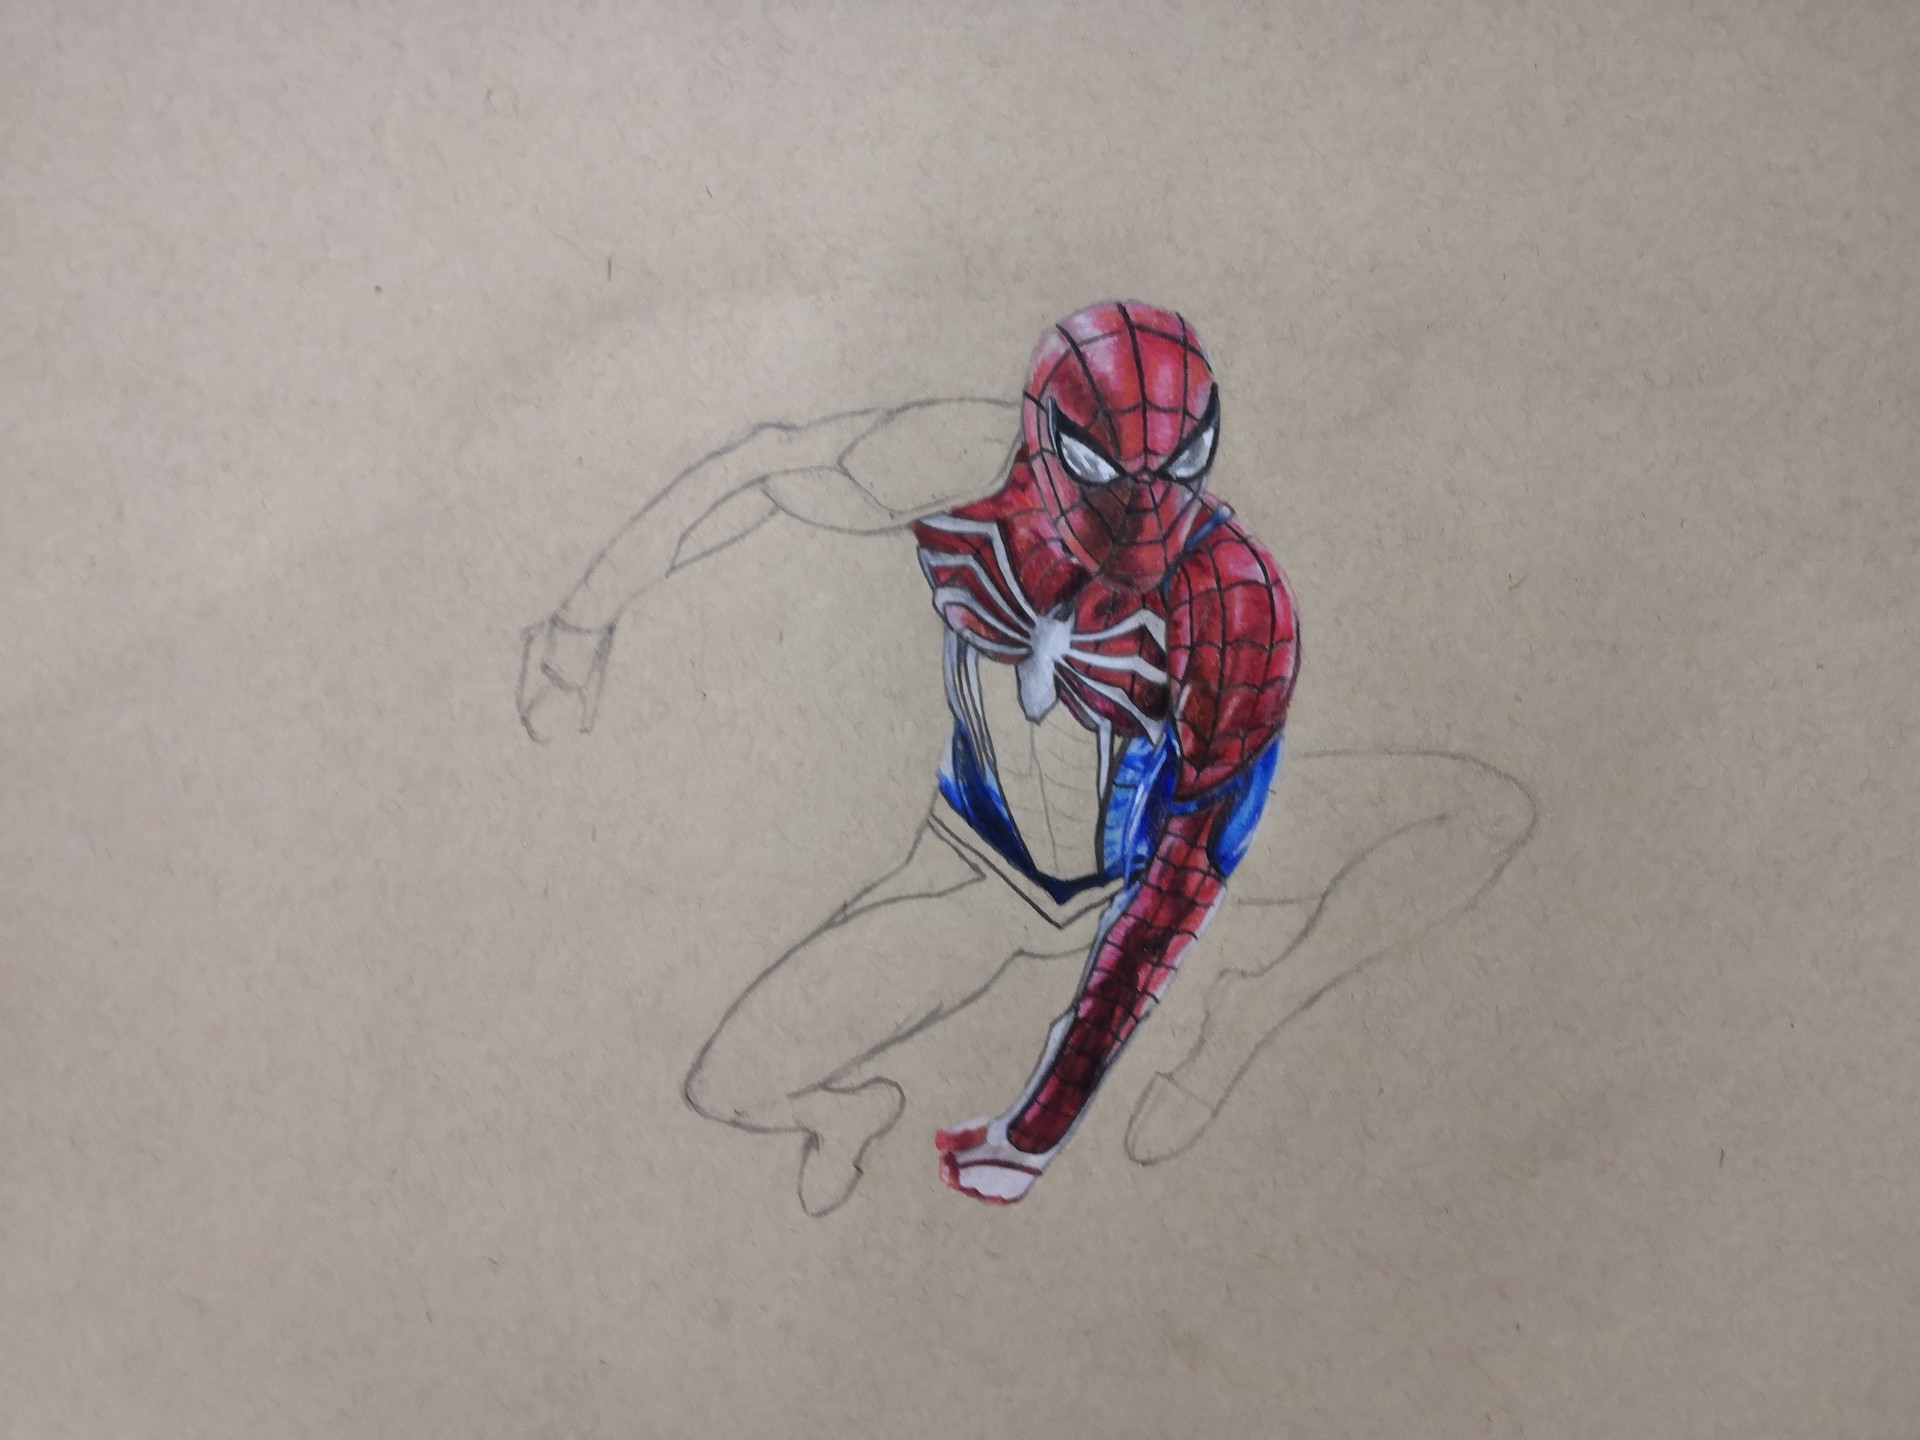 Himanshu Pandey - Spiderman PS4 colored pencil sketch